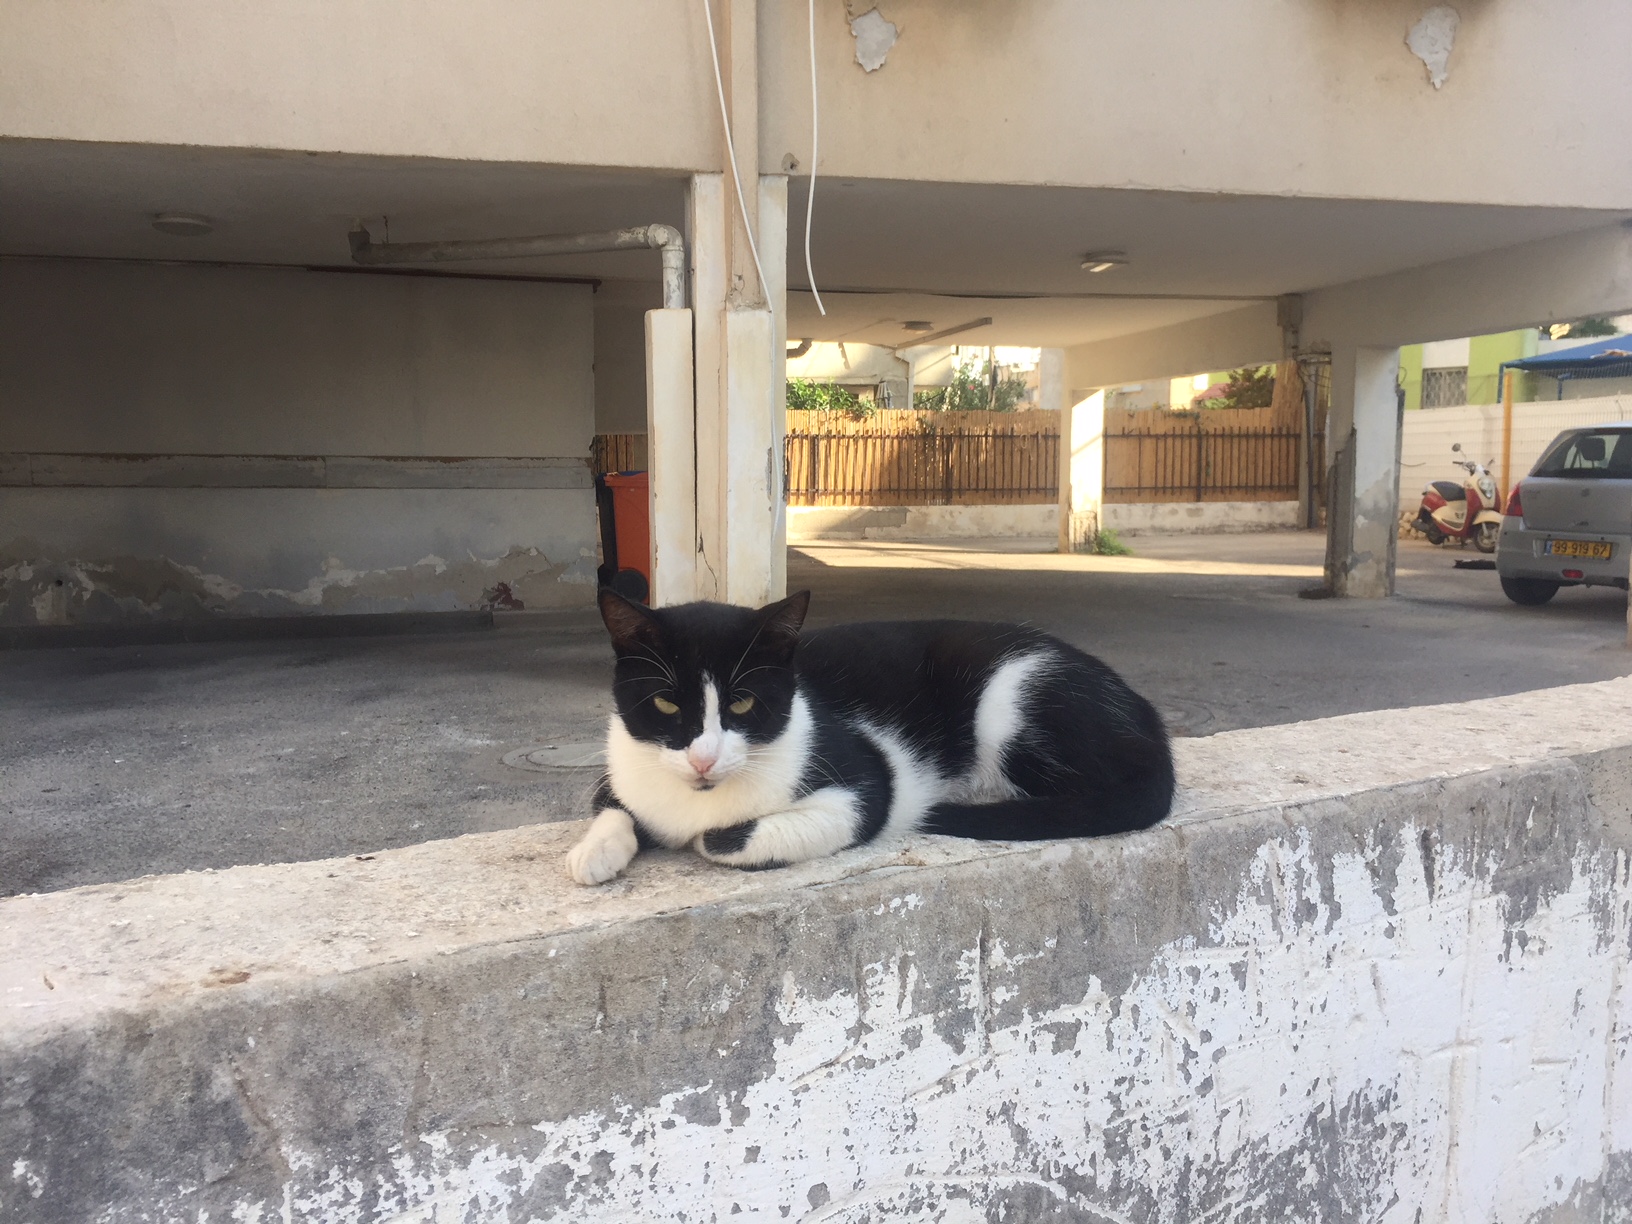 עיריית בת ים יוצאת במבצע לעיקור וסירוס חתולי רחוב בשיתוף מאכילי חתולים ומרפאות בע"ח בעיר